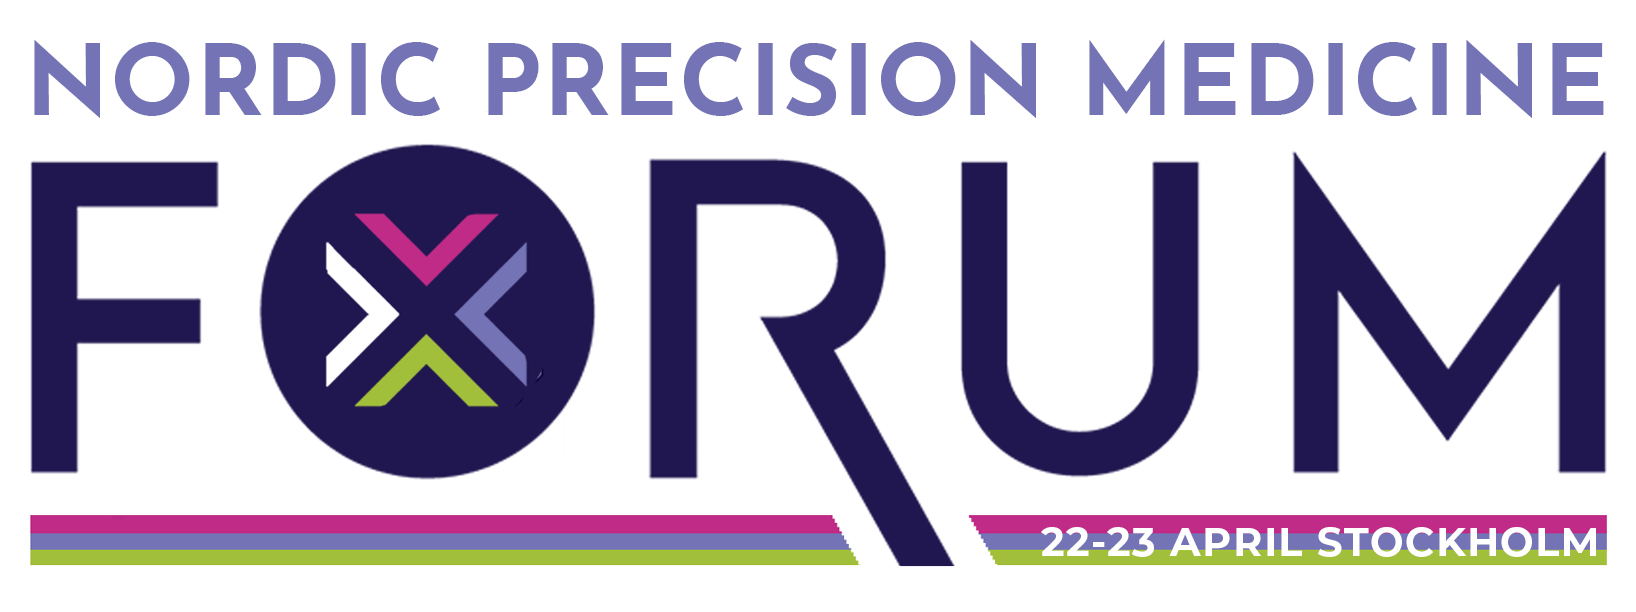 Nordic Precision Medicine logo_final